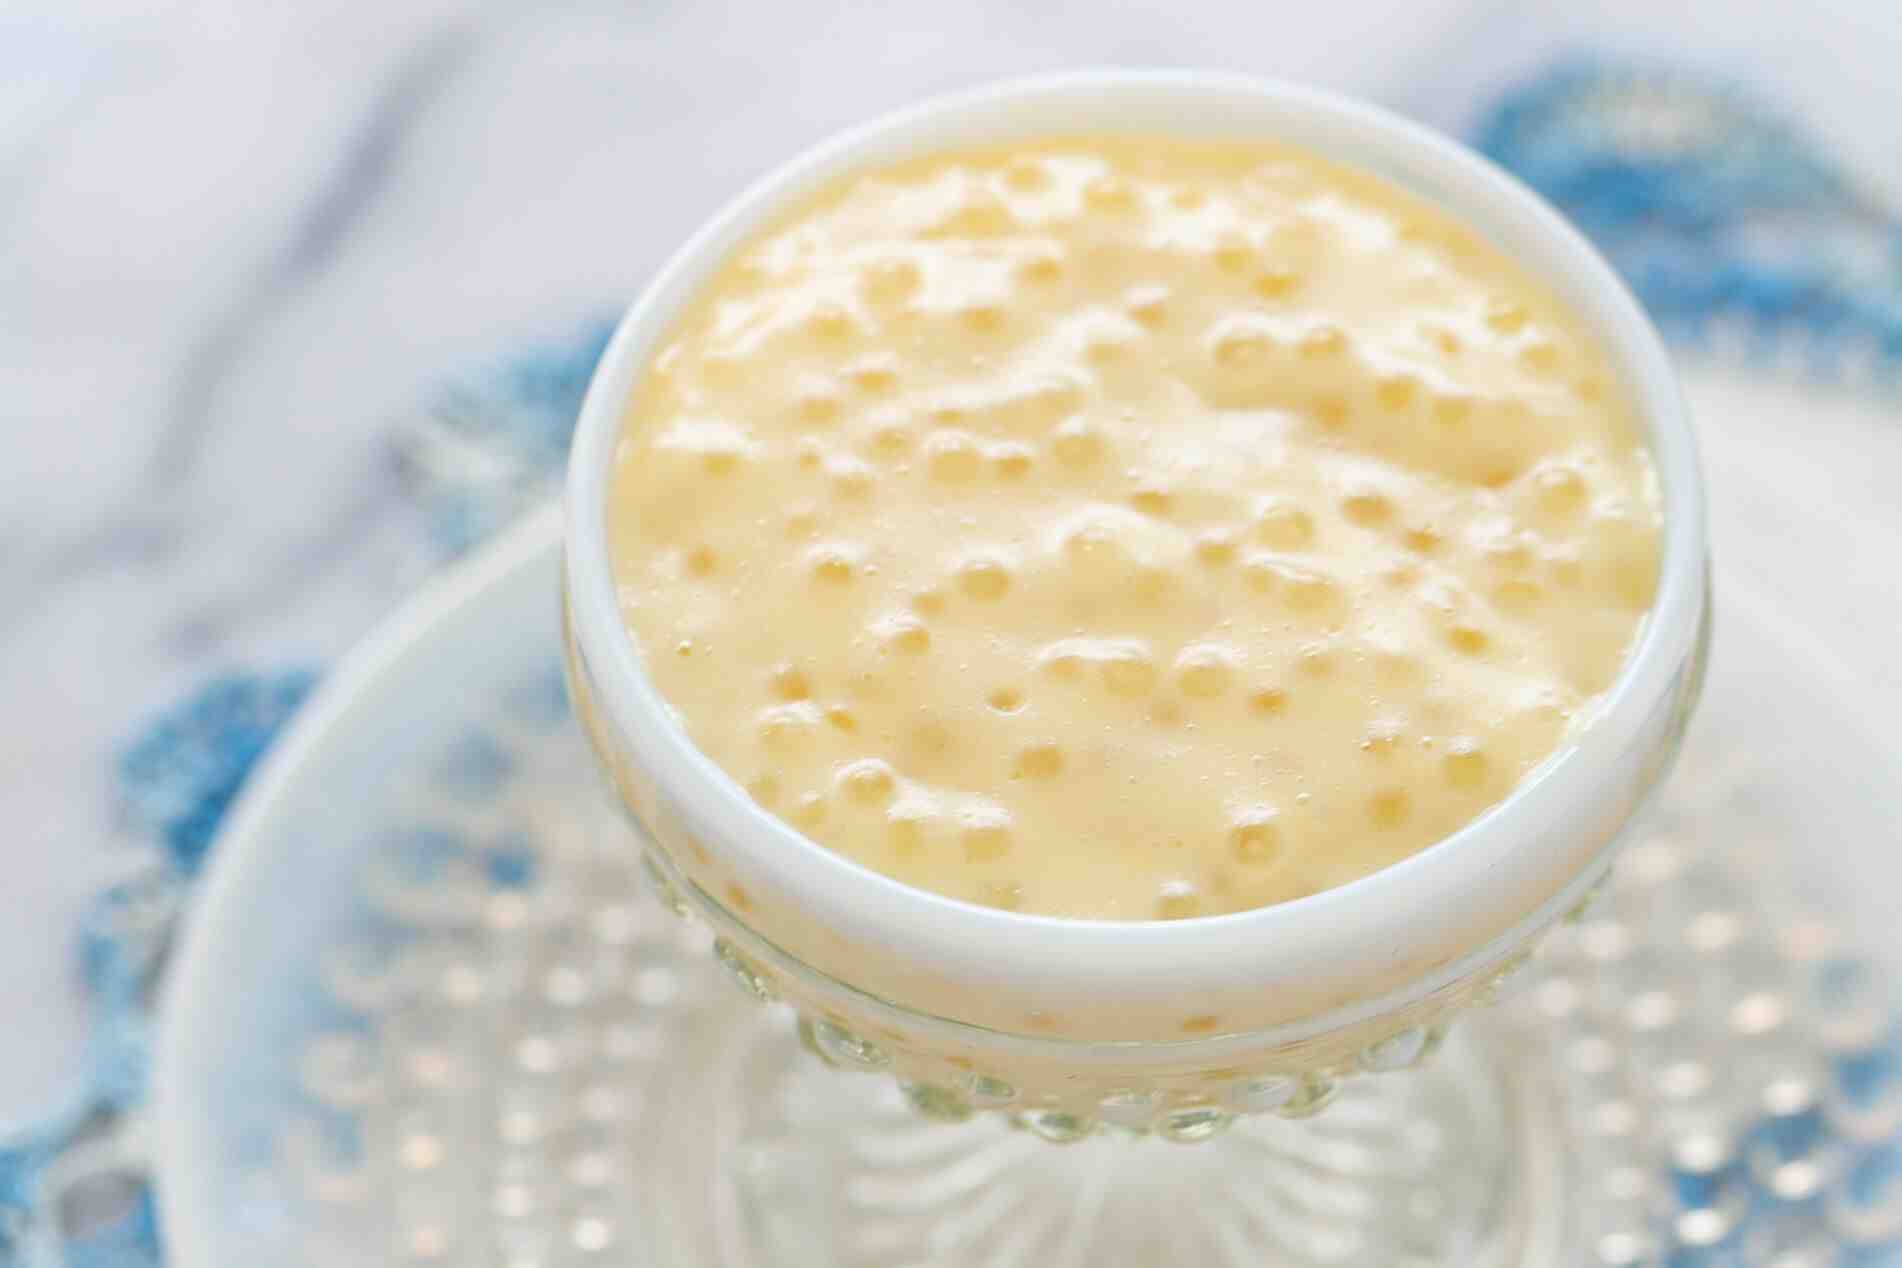 How do you make tapioca pearl dessert?